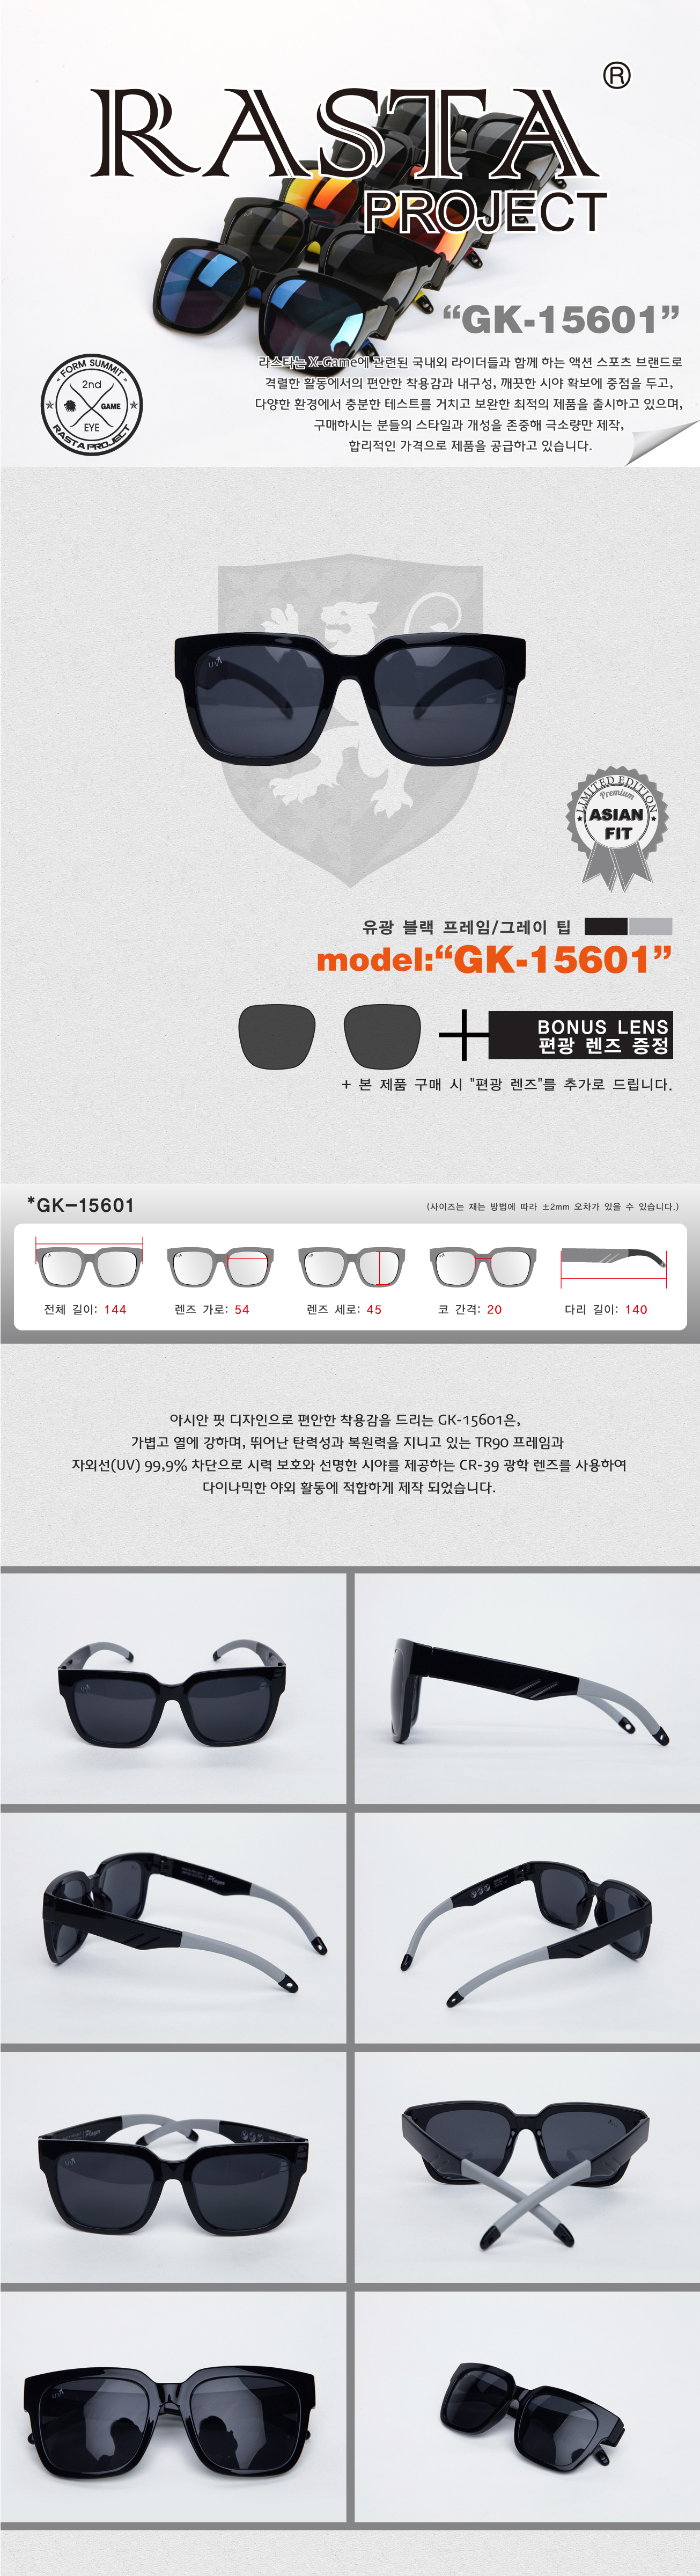 GK-15601 Gloss Black/Gray